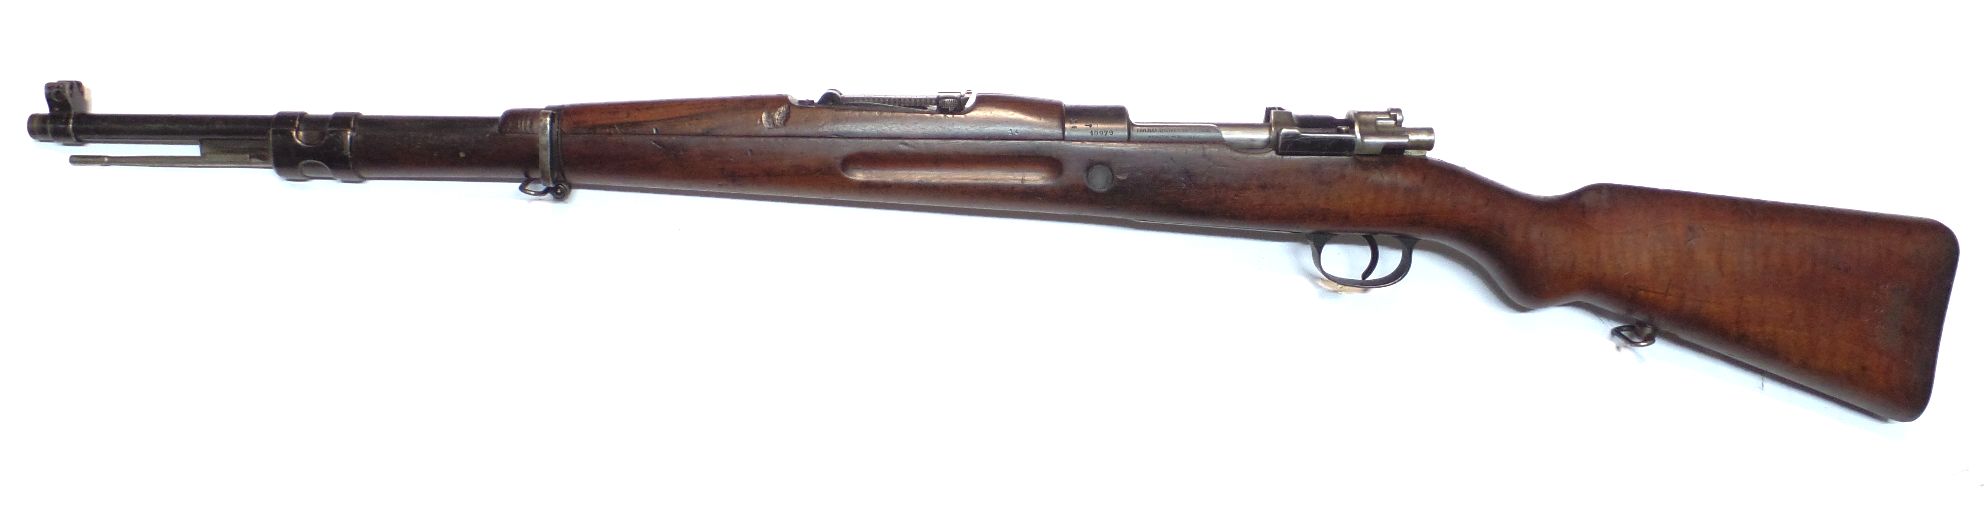 FN 98 Modèle 1935 Peruvien calibre 30-06